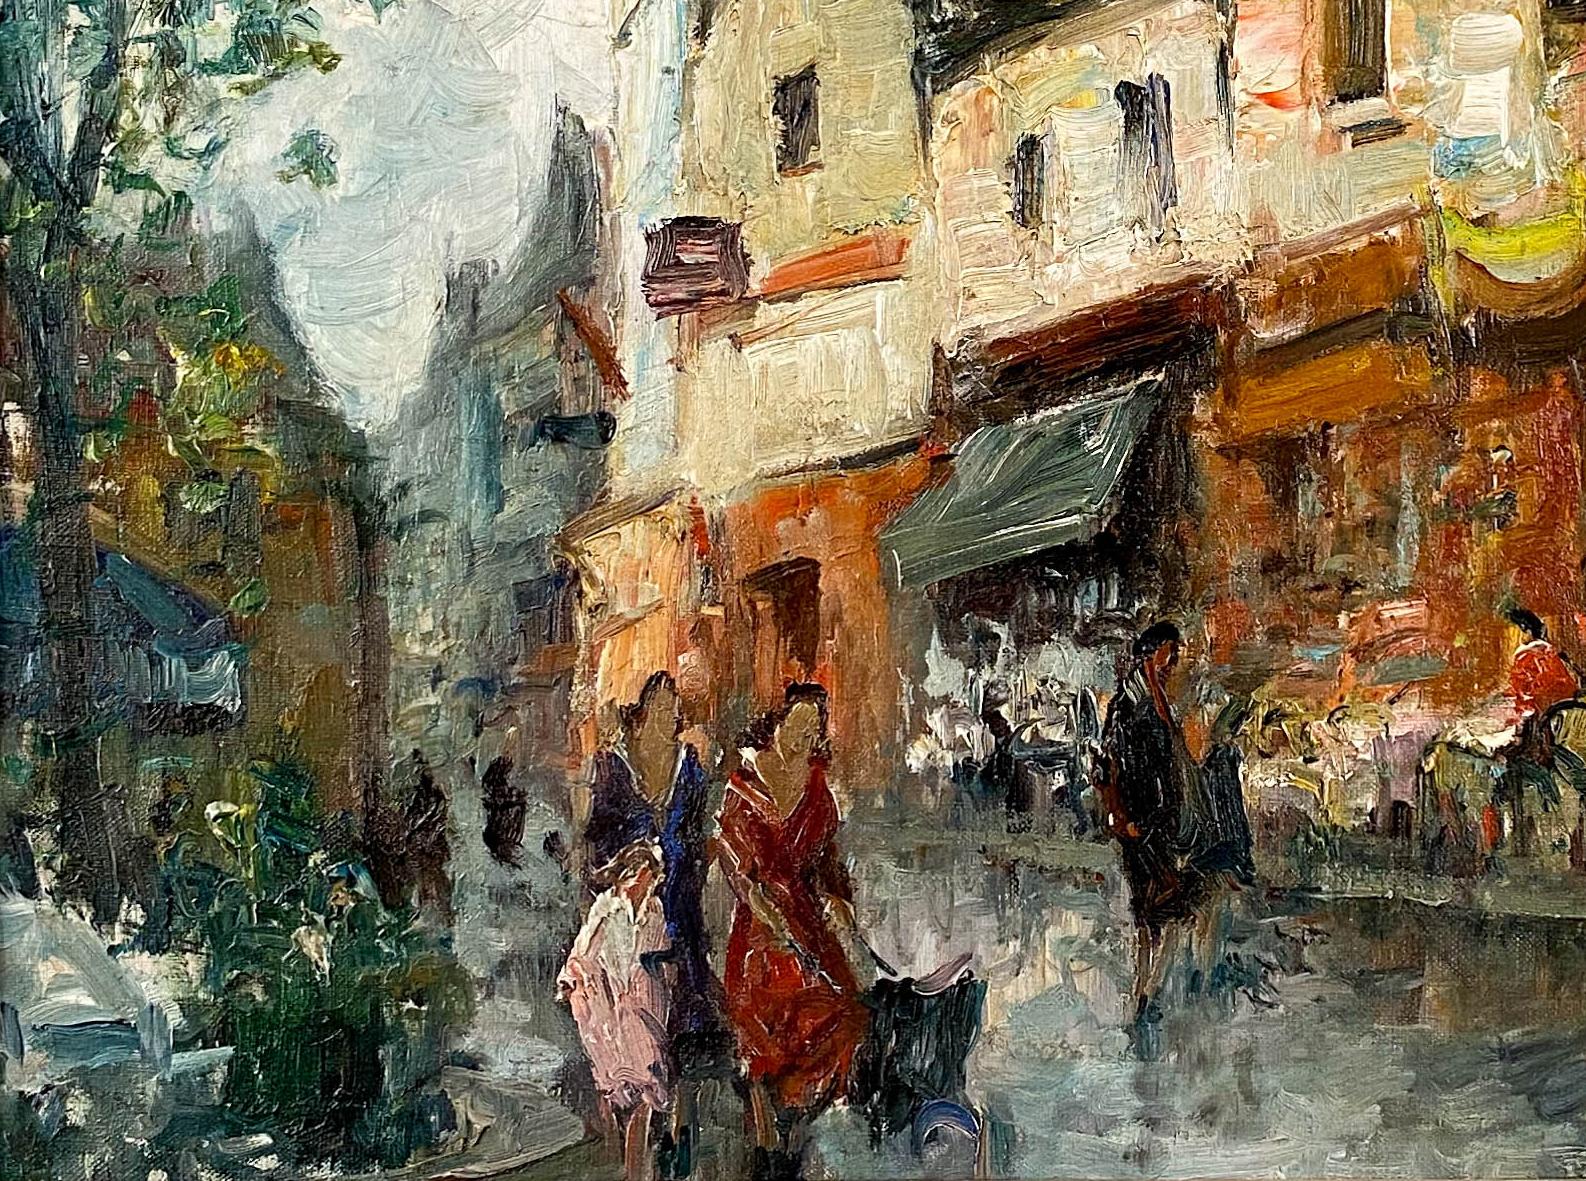 Scène de rue parisienne - Post-impressionnisme Painting par Merio Ameglio 